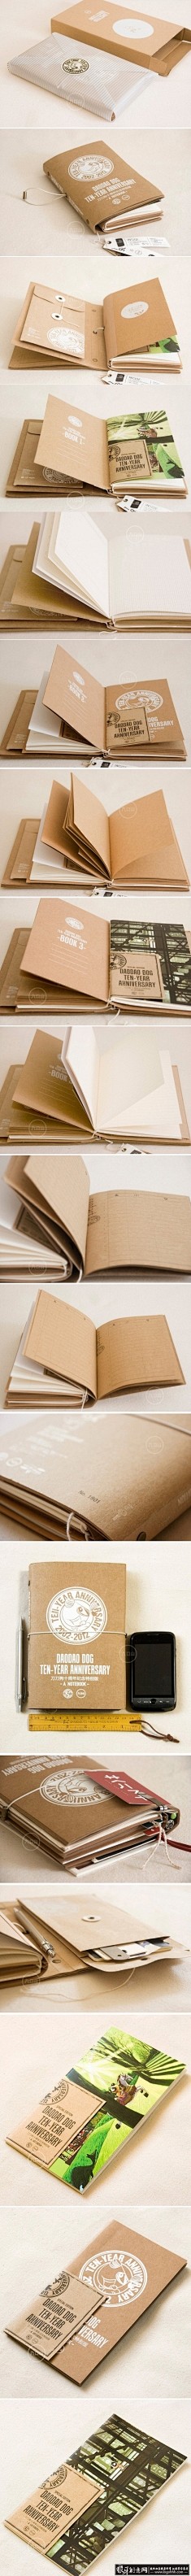 个性旅行日记本装帧设计 创意笔记本装帧 ...